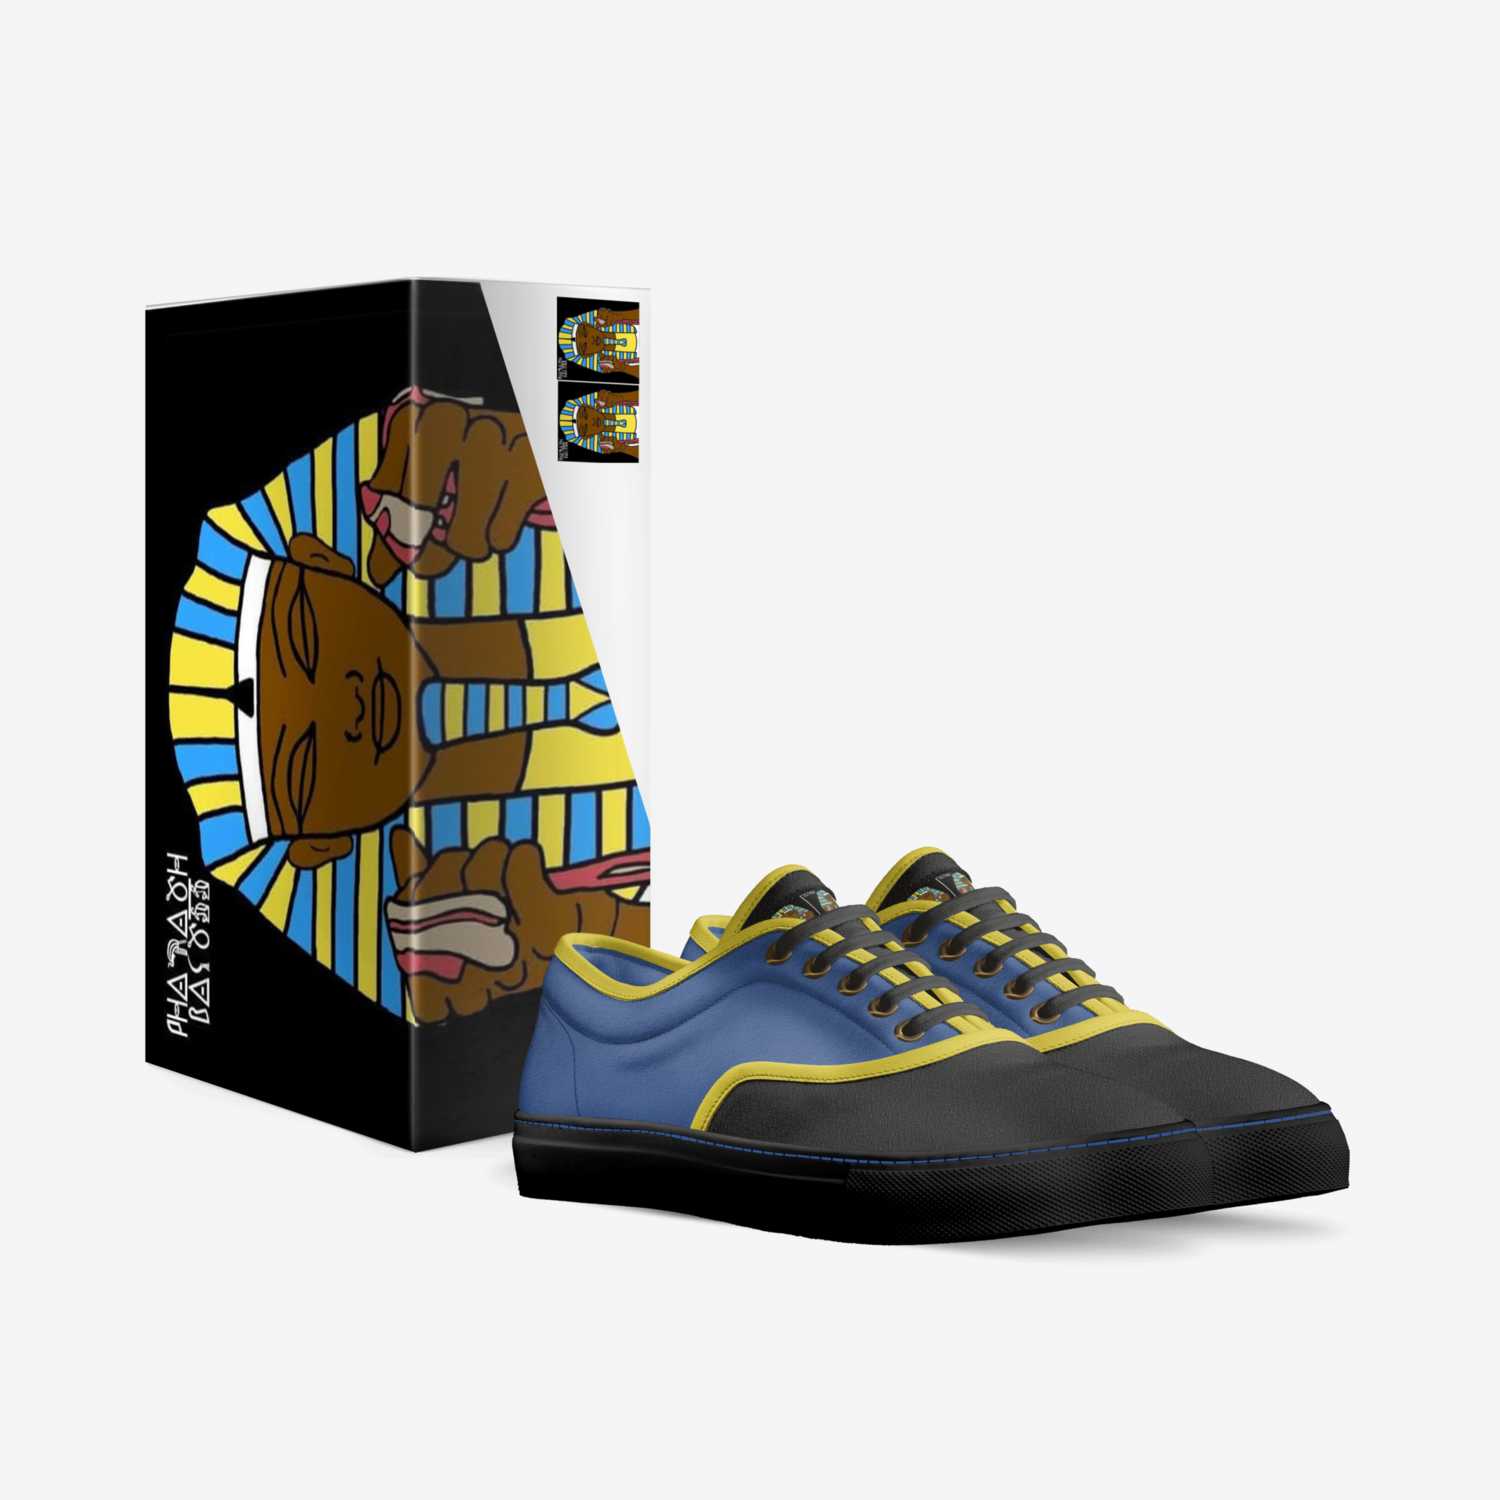 PHARAOH BACON  custom made in Italy shoes by Pharaoh Bacon | Box view